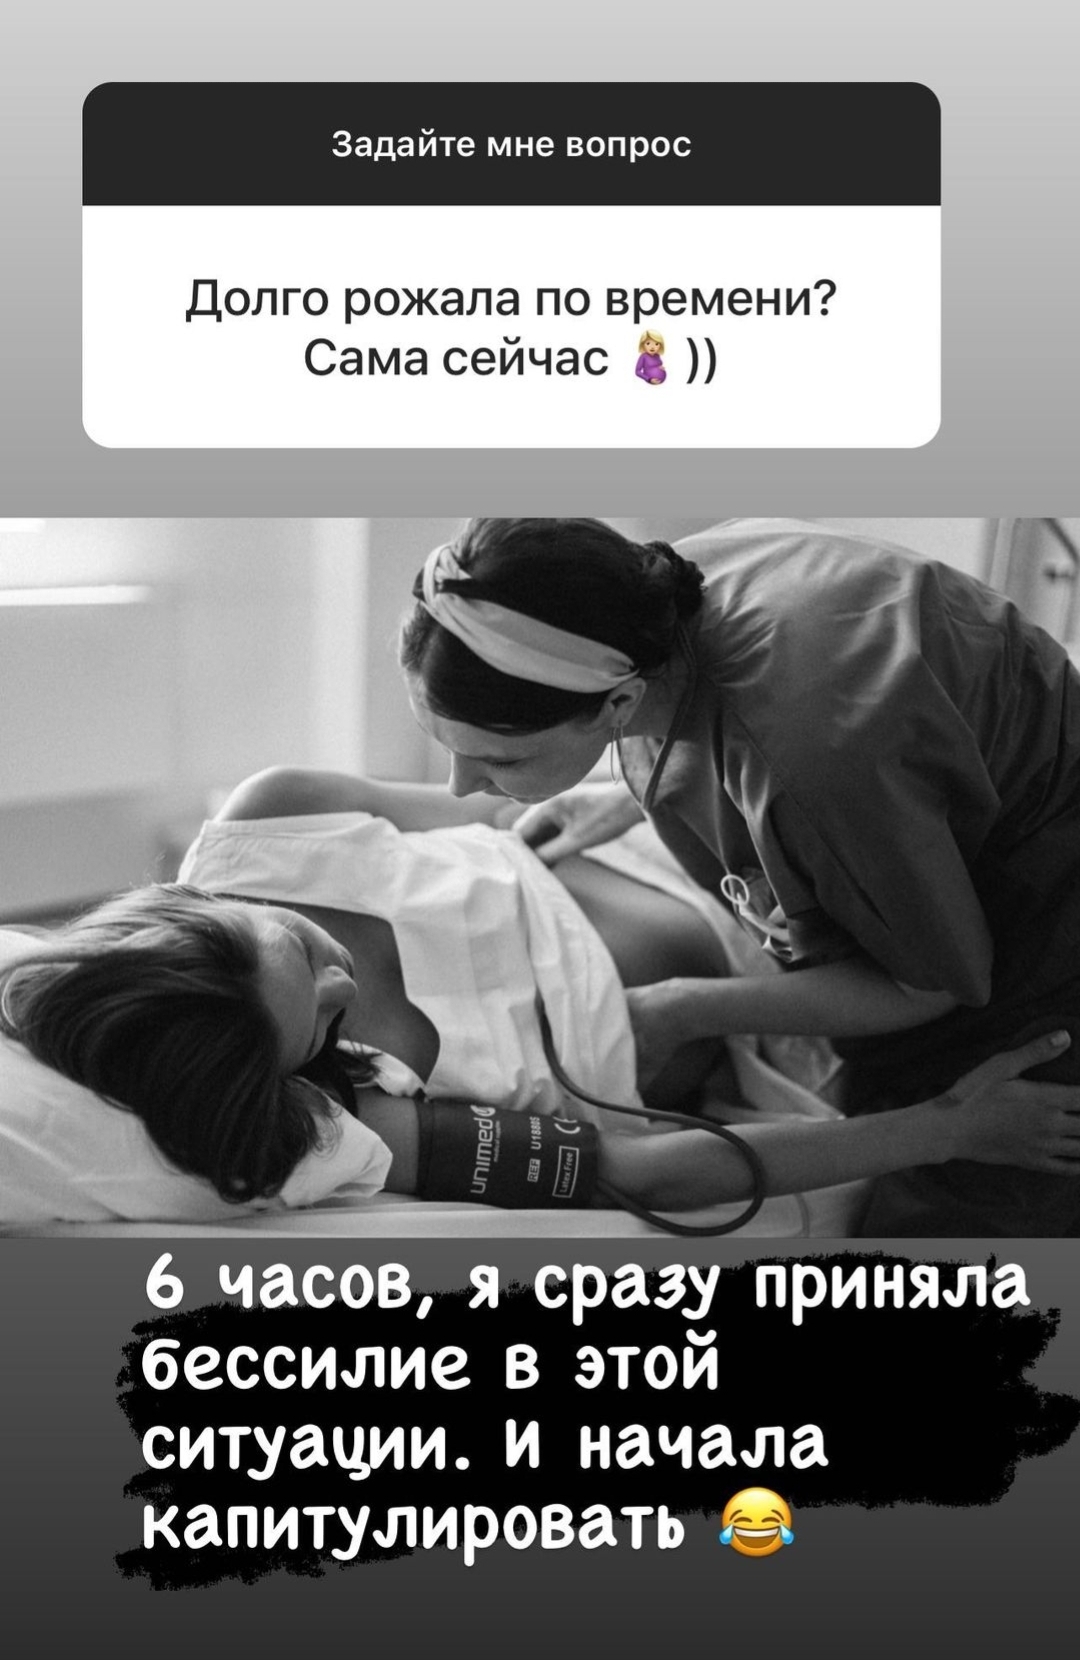 Леся Кафельникова подробно описала, как прошли роды и показала снимок из палаты